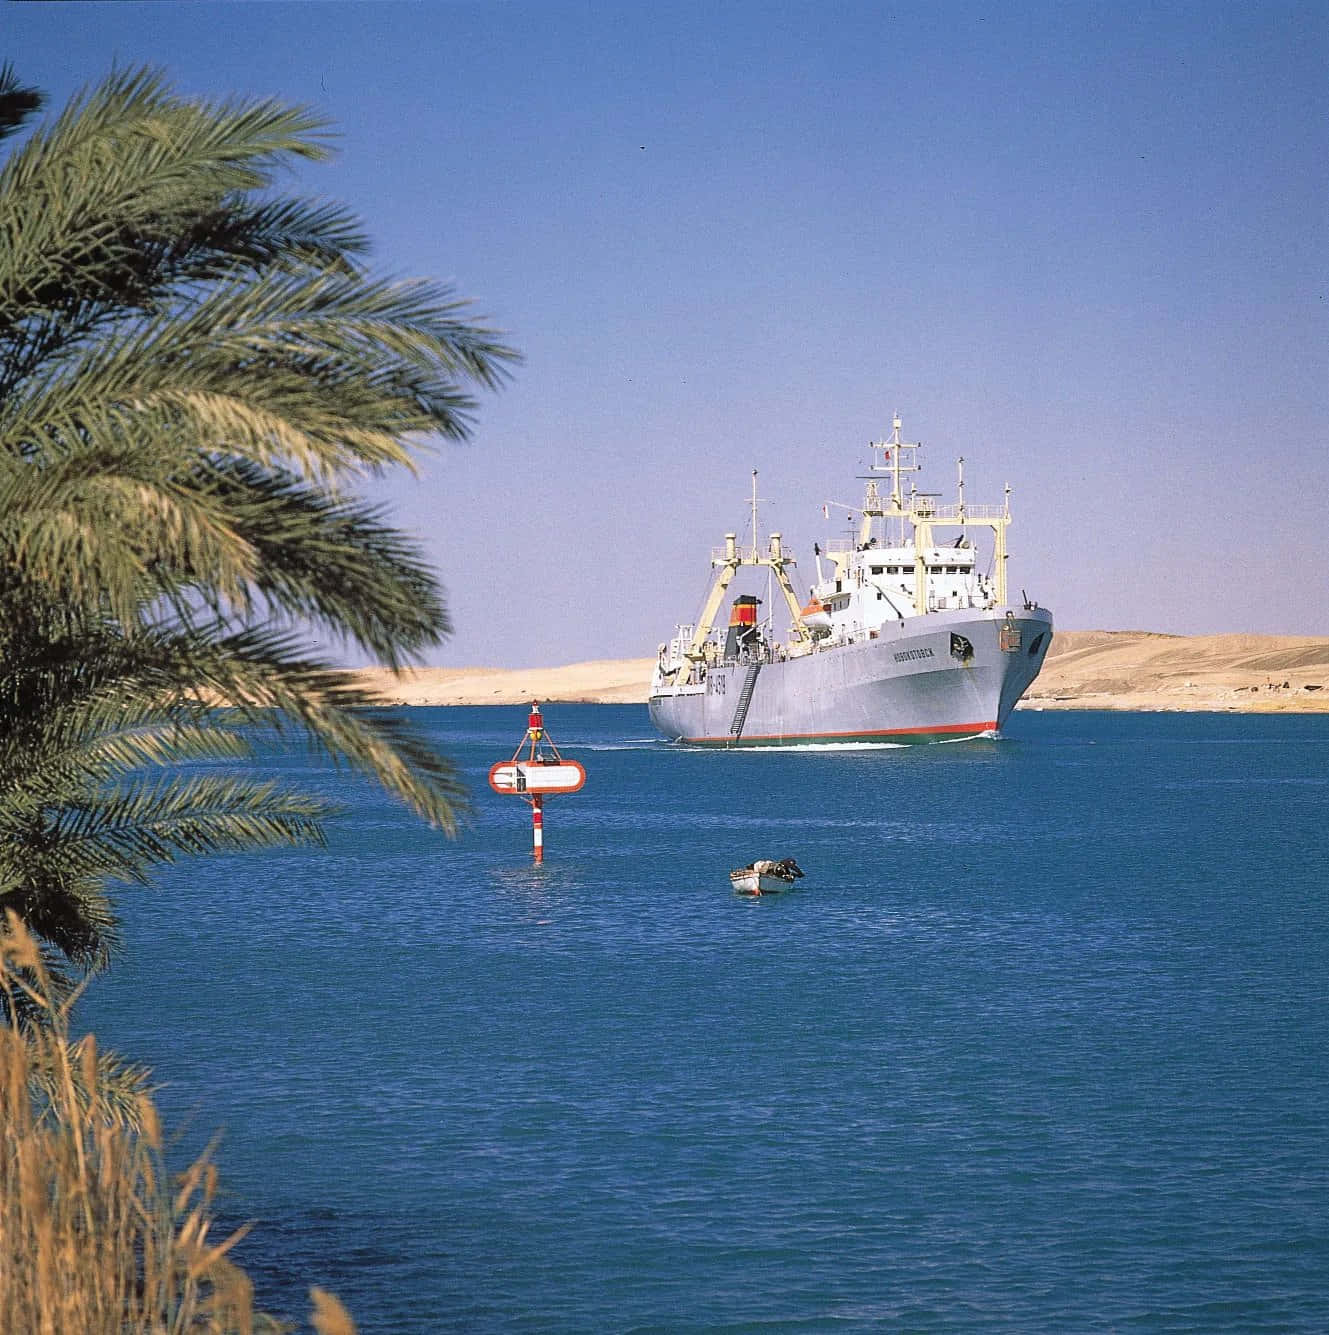 Schönesbild Des Suezkanals